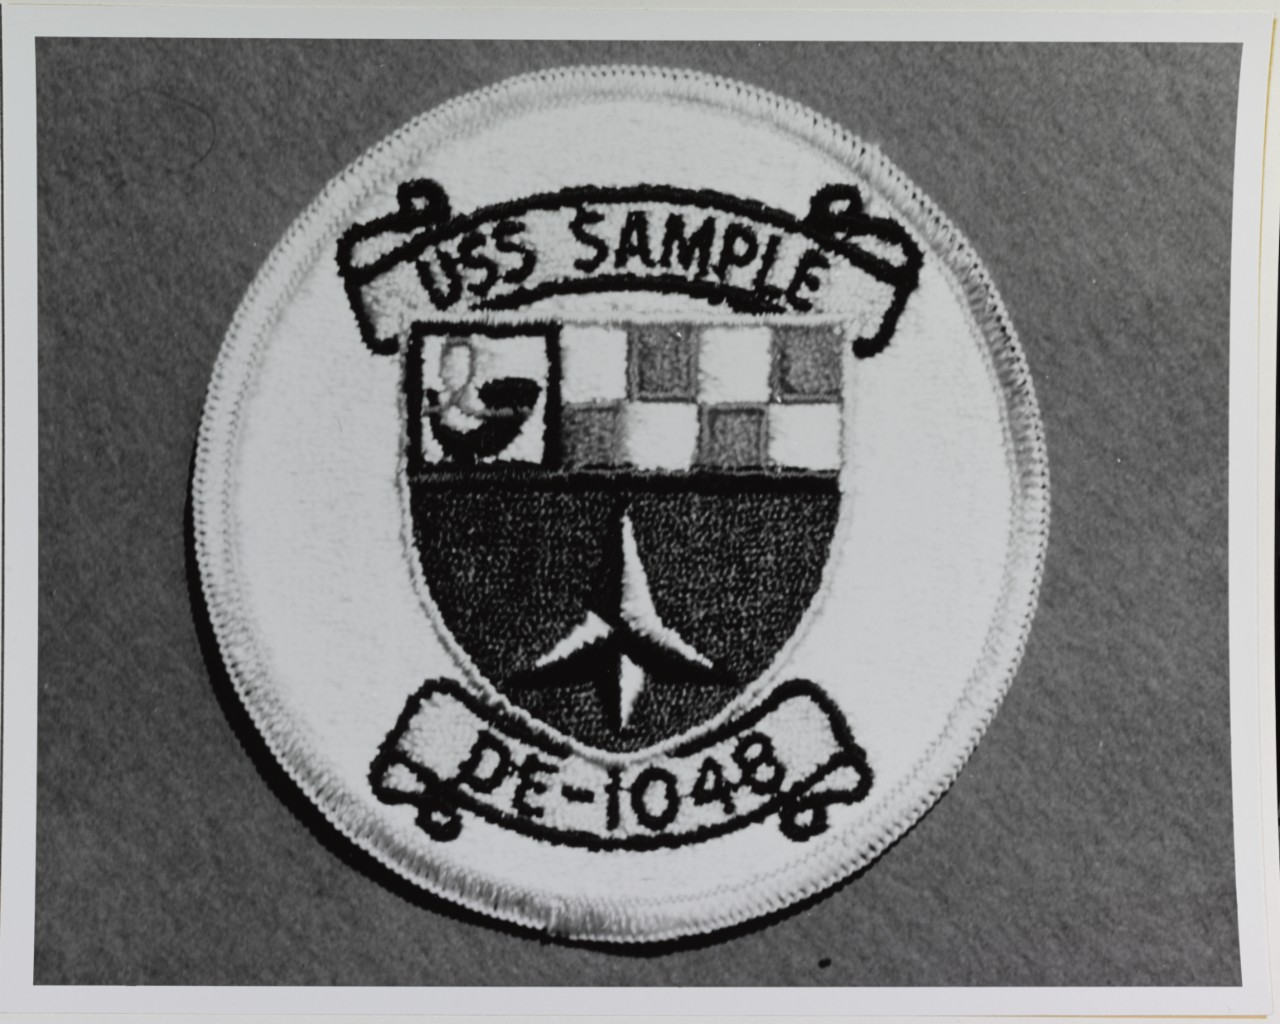 Insignia: USS SAMPLE (DE-1048)